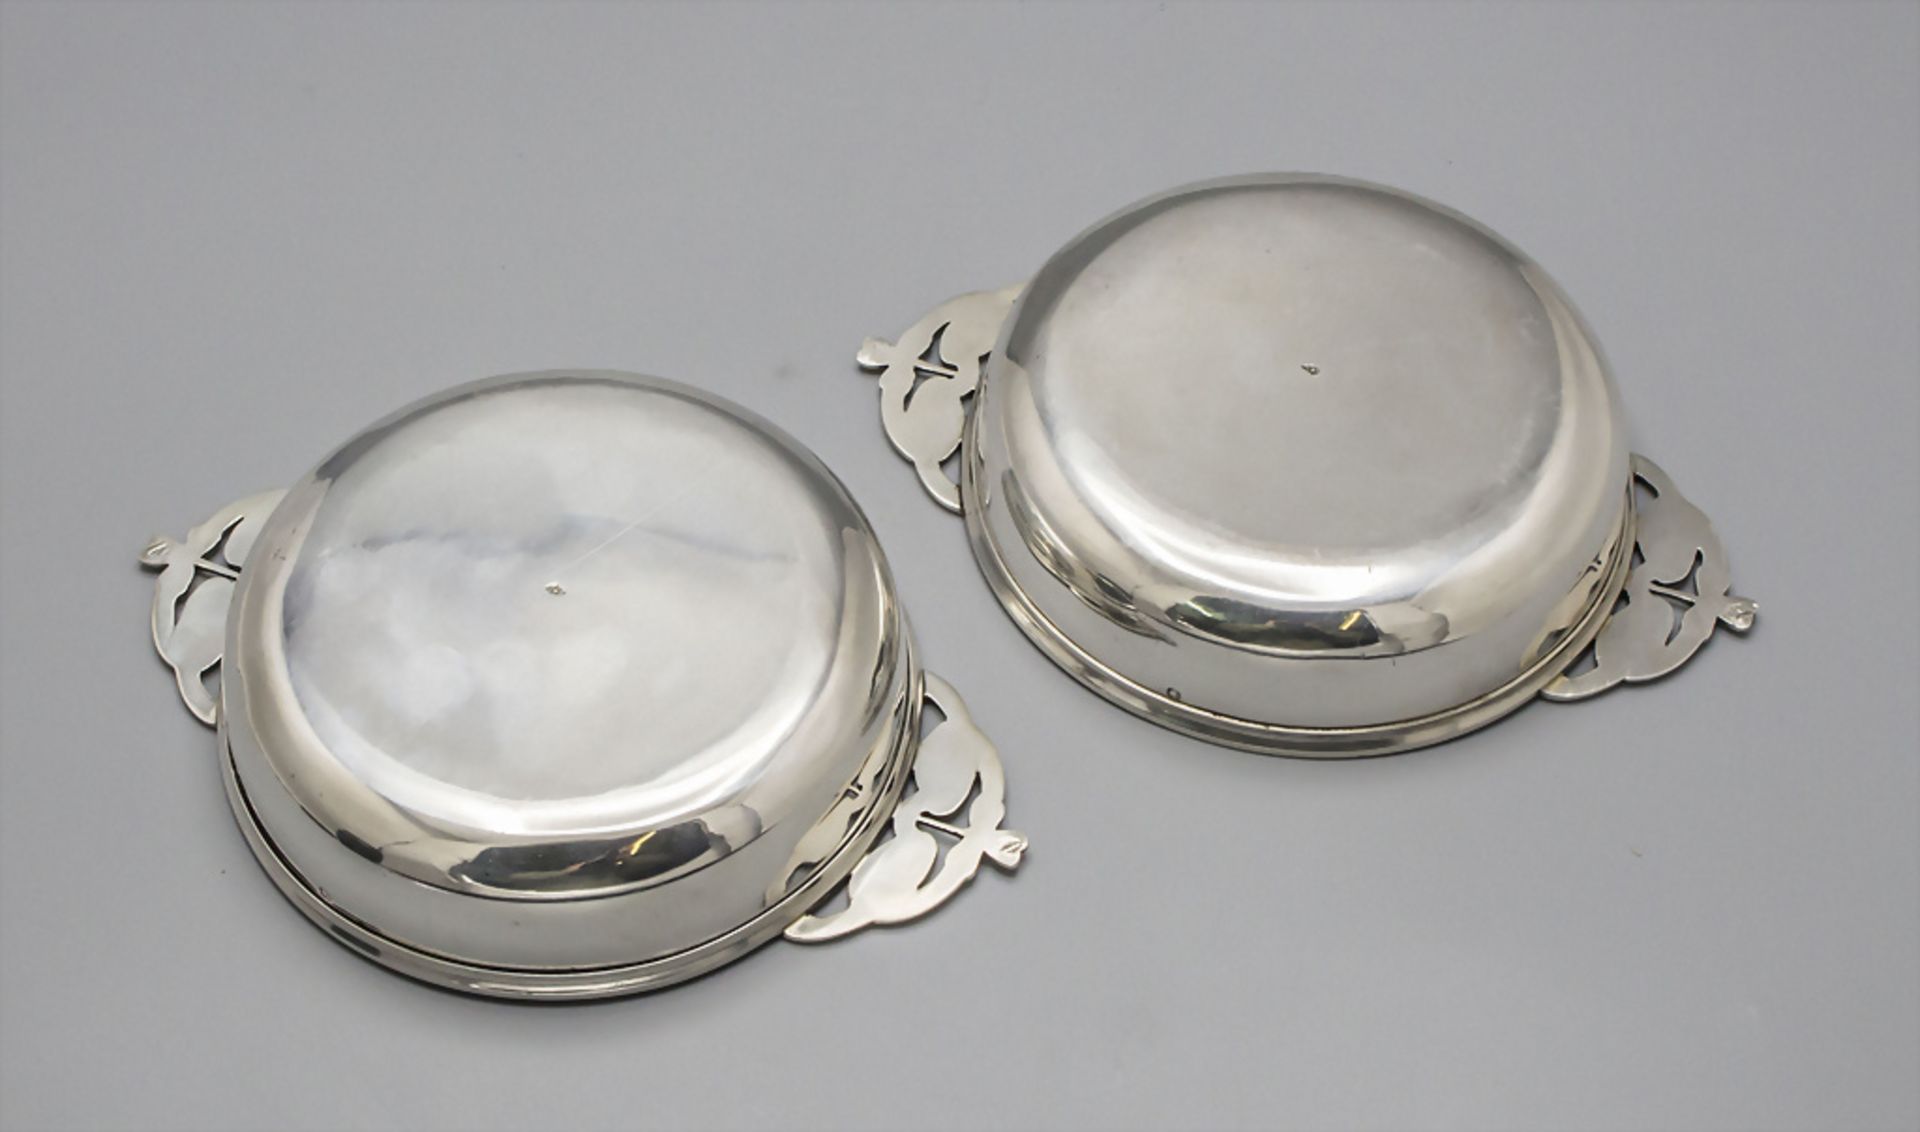 Paar Jugendstil Silberschalen mit Handhaben / Two Art Nouveau silver bowls with handles, ... - Bild 3 aus 7